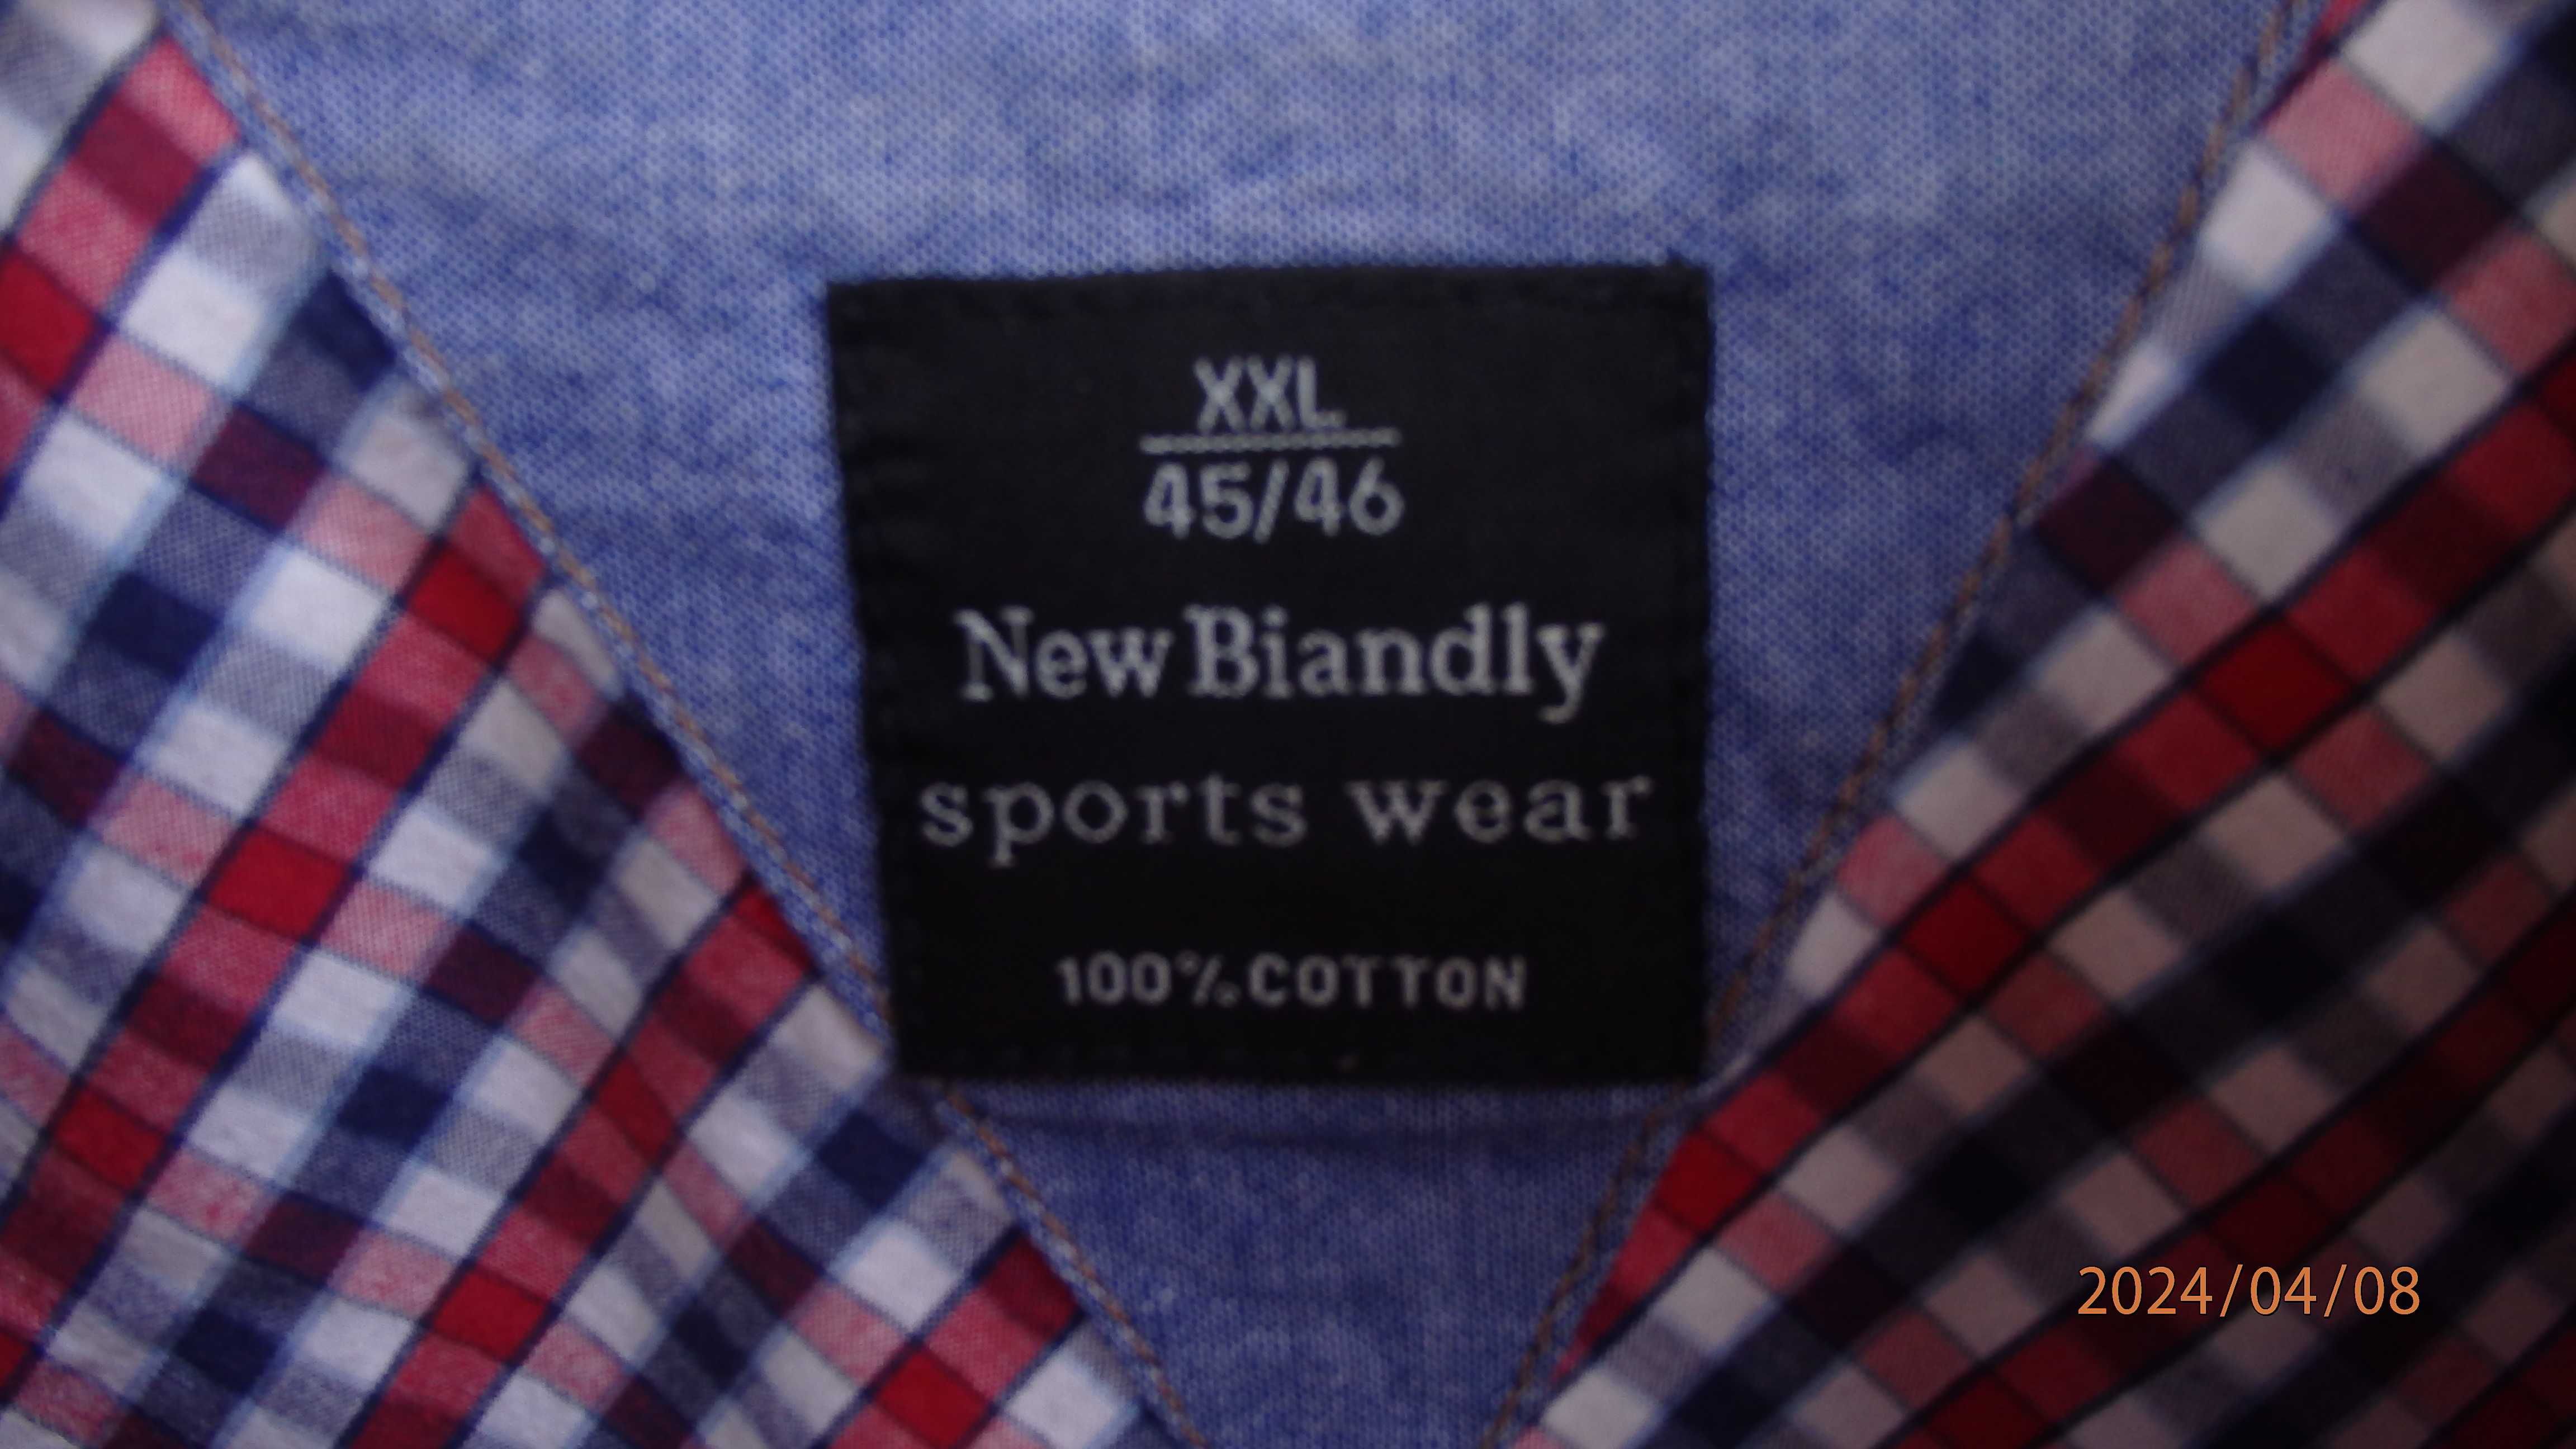 Koszula męska sportowa firmy New Biandly XXL (45/46)